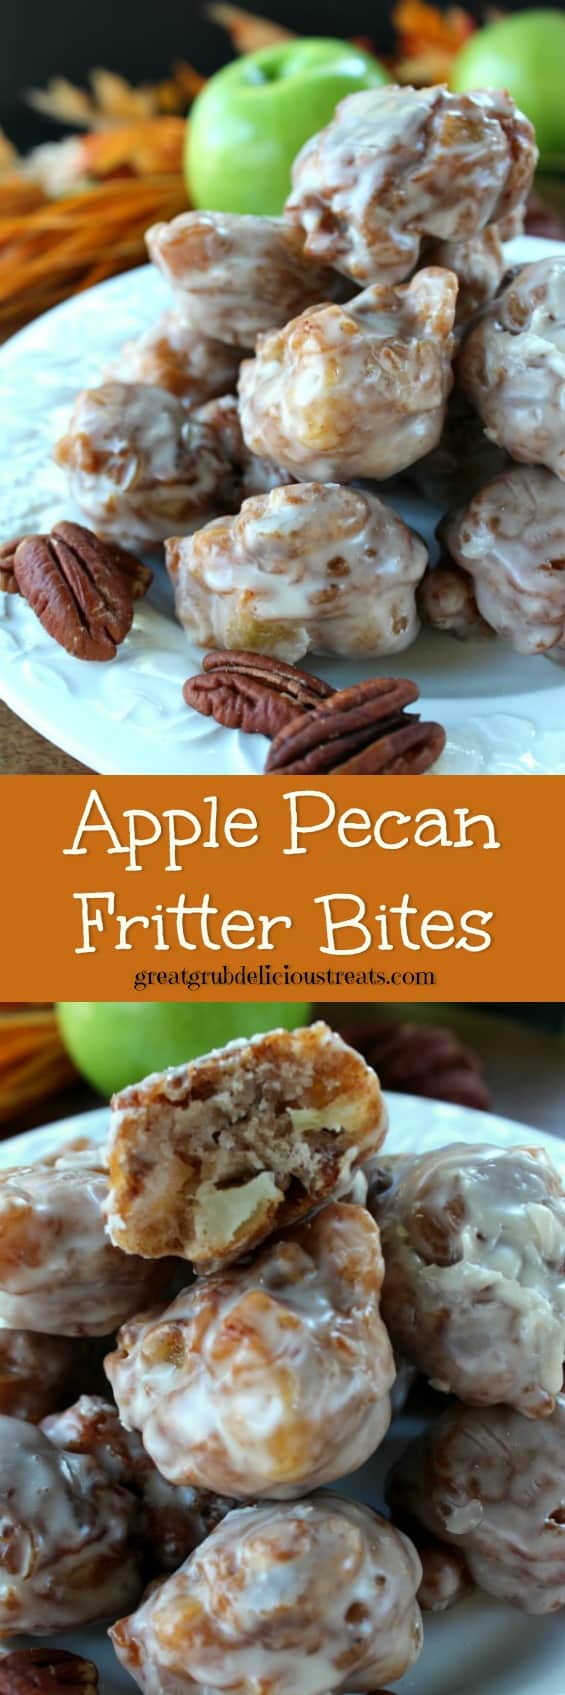 apple pecan fritter bites